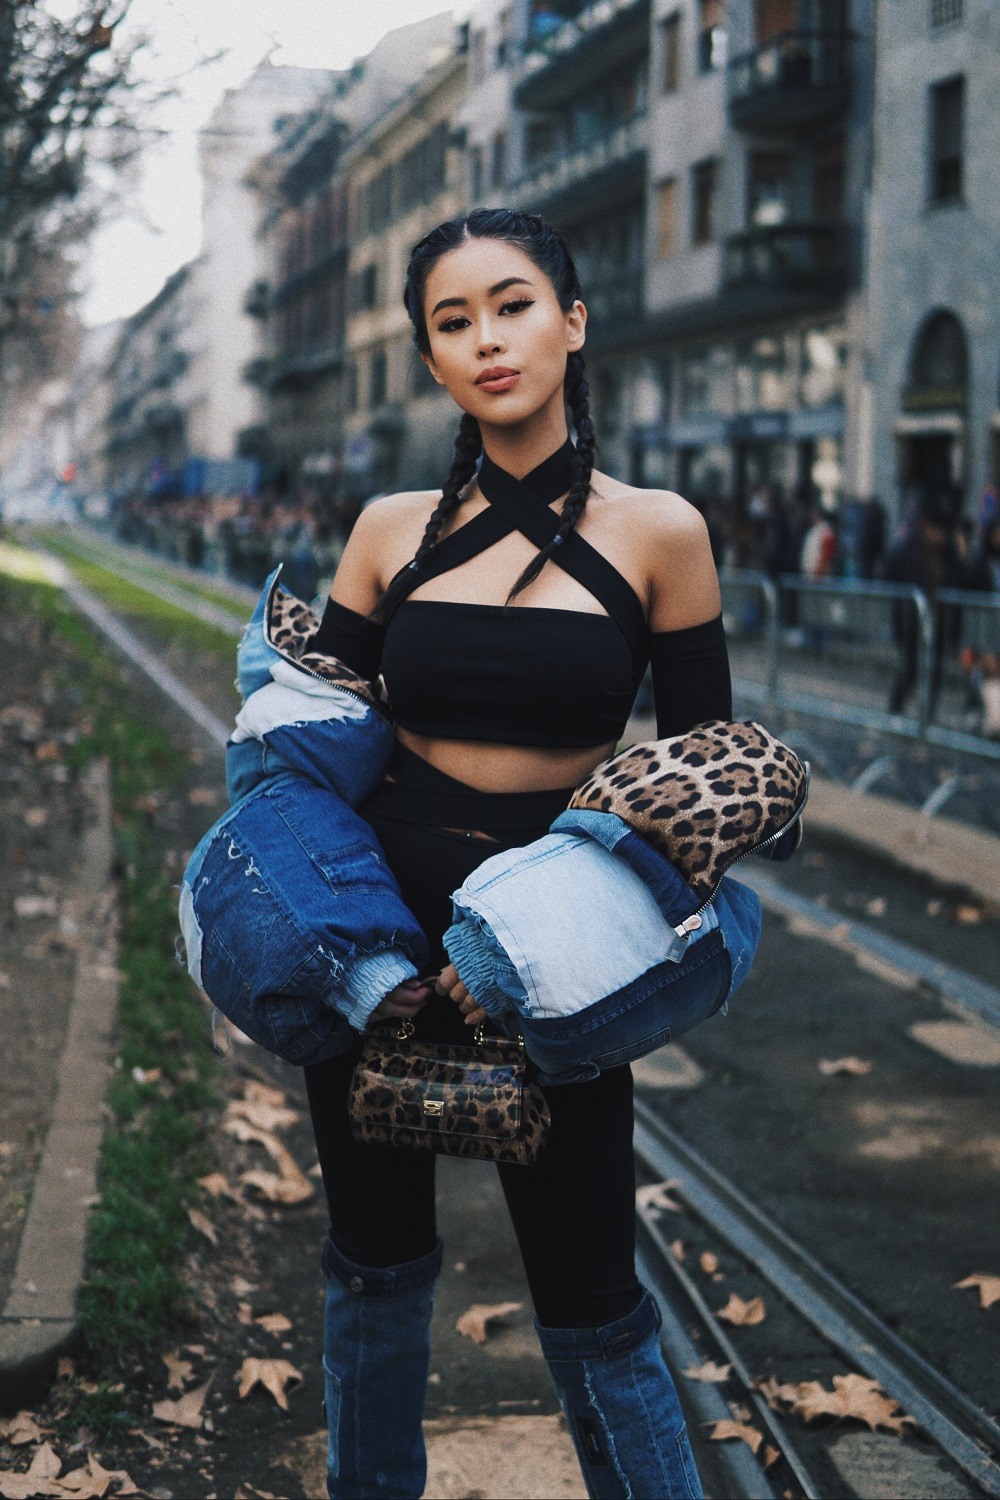 Là một người trẻ có sức ảnh hưởng lớn đối với giới trẻ Việt, cũng là người điều hành Đế chế xa xỉ phẩm DAFC, Tiên Nguyễn có mối quan hệ thân thiết với nhiều thương hiệu cao cấp, trong số đó có ông chủ của Dolce&Gabbana. Cô cũng thường xuyên có mặt tại những buổi private party của thương hiệu.